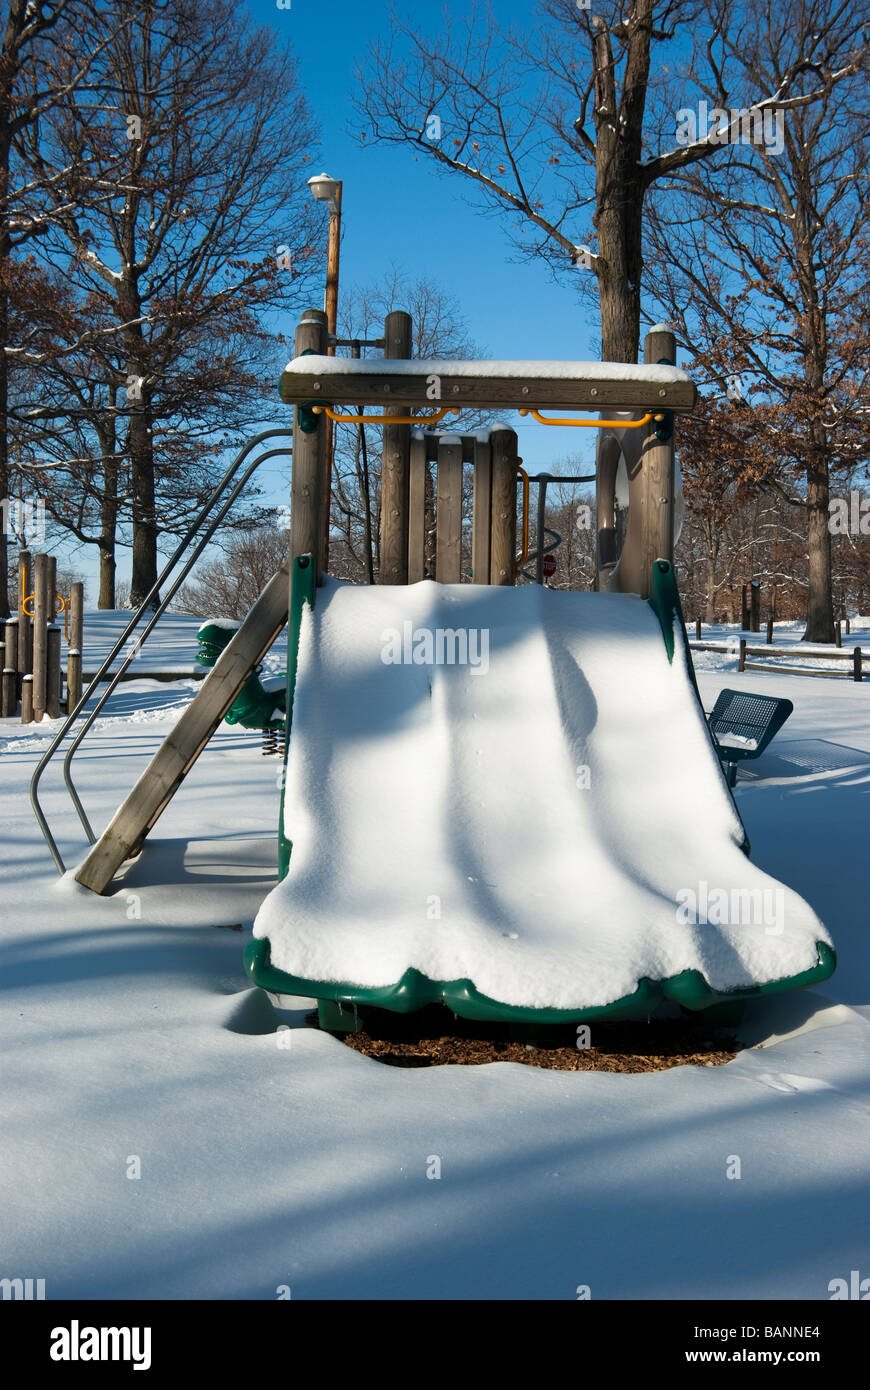 La neige glisse convered siéger non utilisée dans une aire de jeux après une tempête de neige Banque D'Images